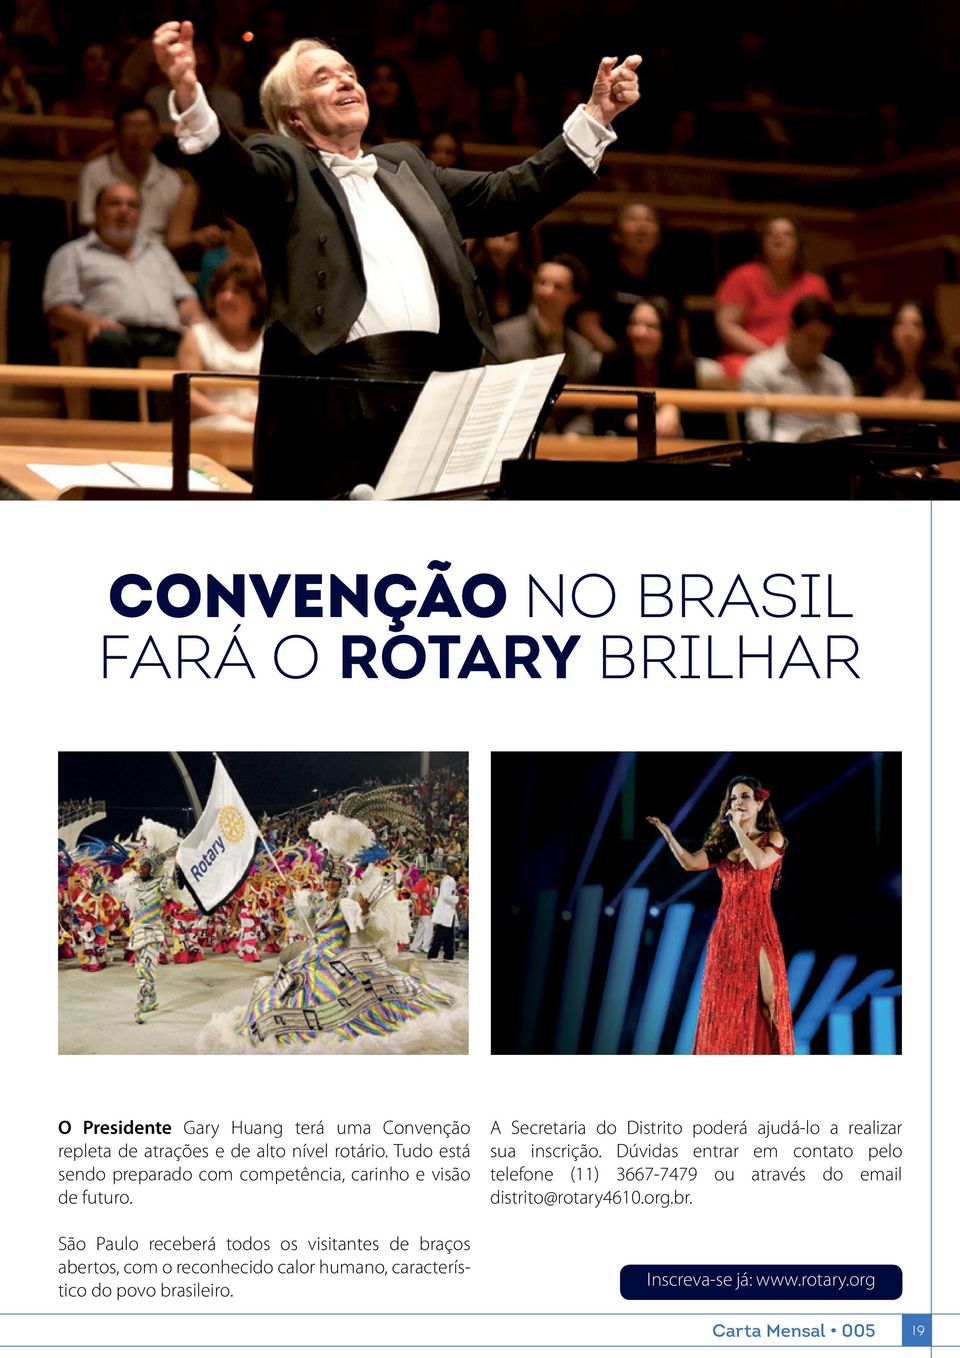 São Paulo receberá todos os visitantes de braços abertos, com o reconhecido calor humano, característico do povo brasileiro.